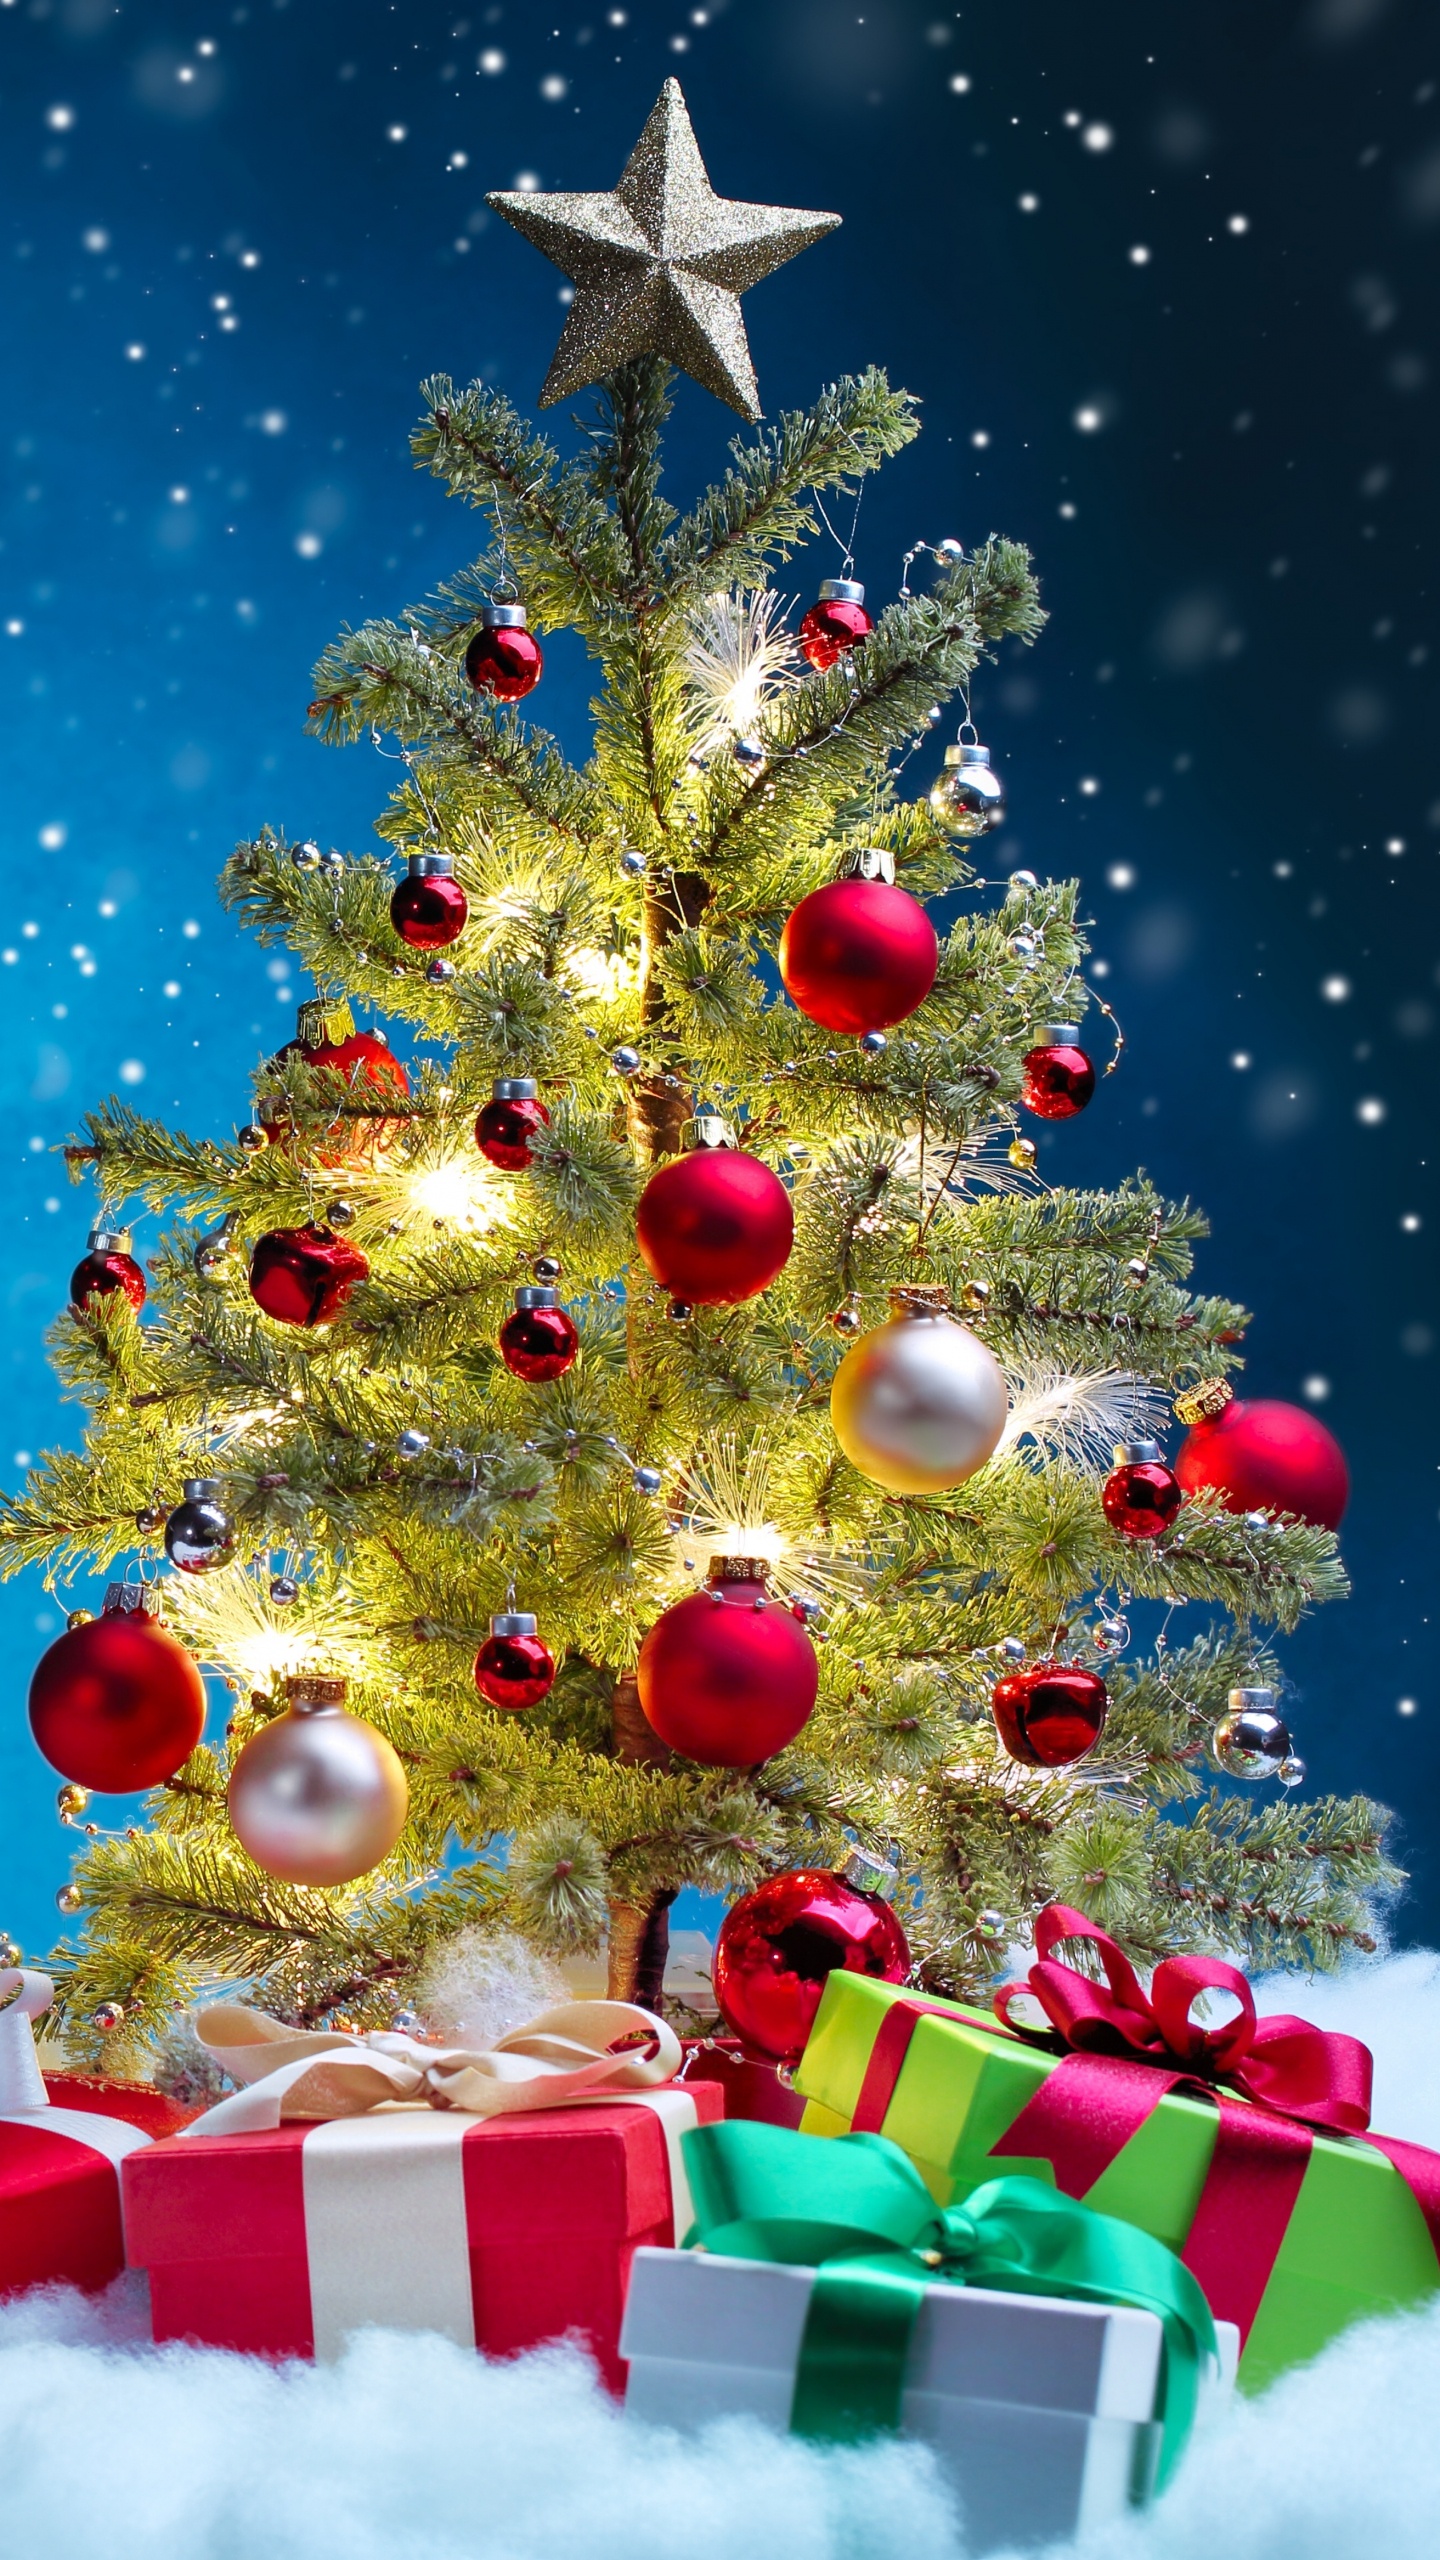 圣诞树, 圣诞节, 圣诞装饰, 圣诞前夕, 圣诞节的装饰品 壁纸 1440x2560 允许